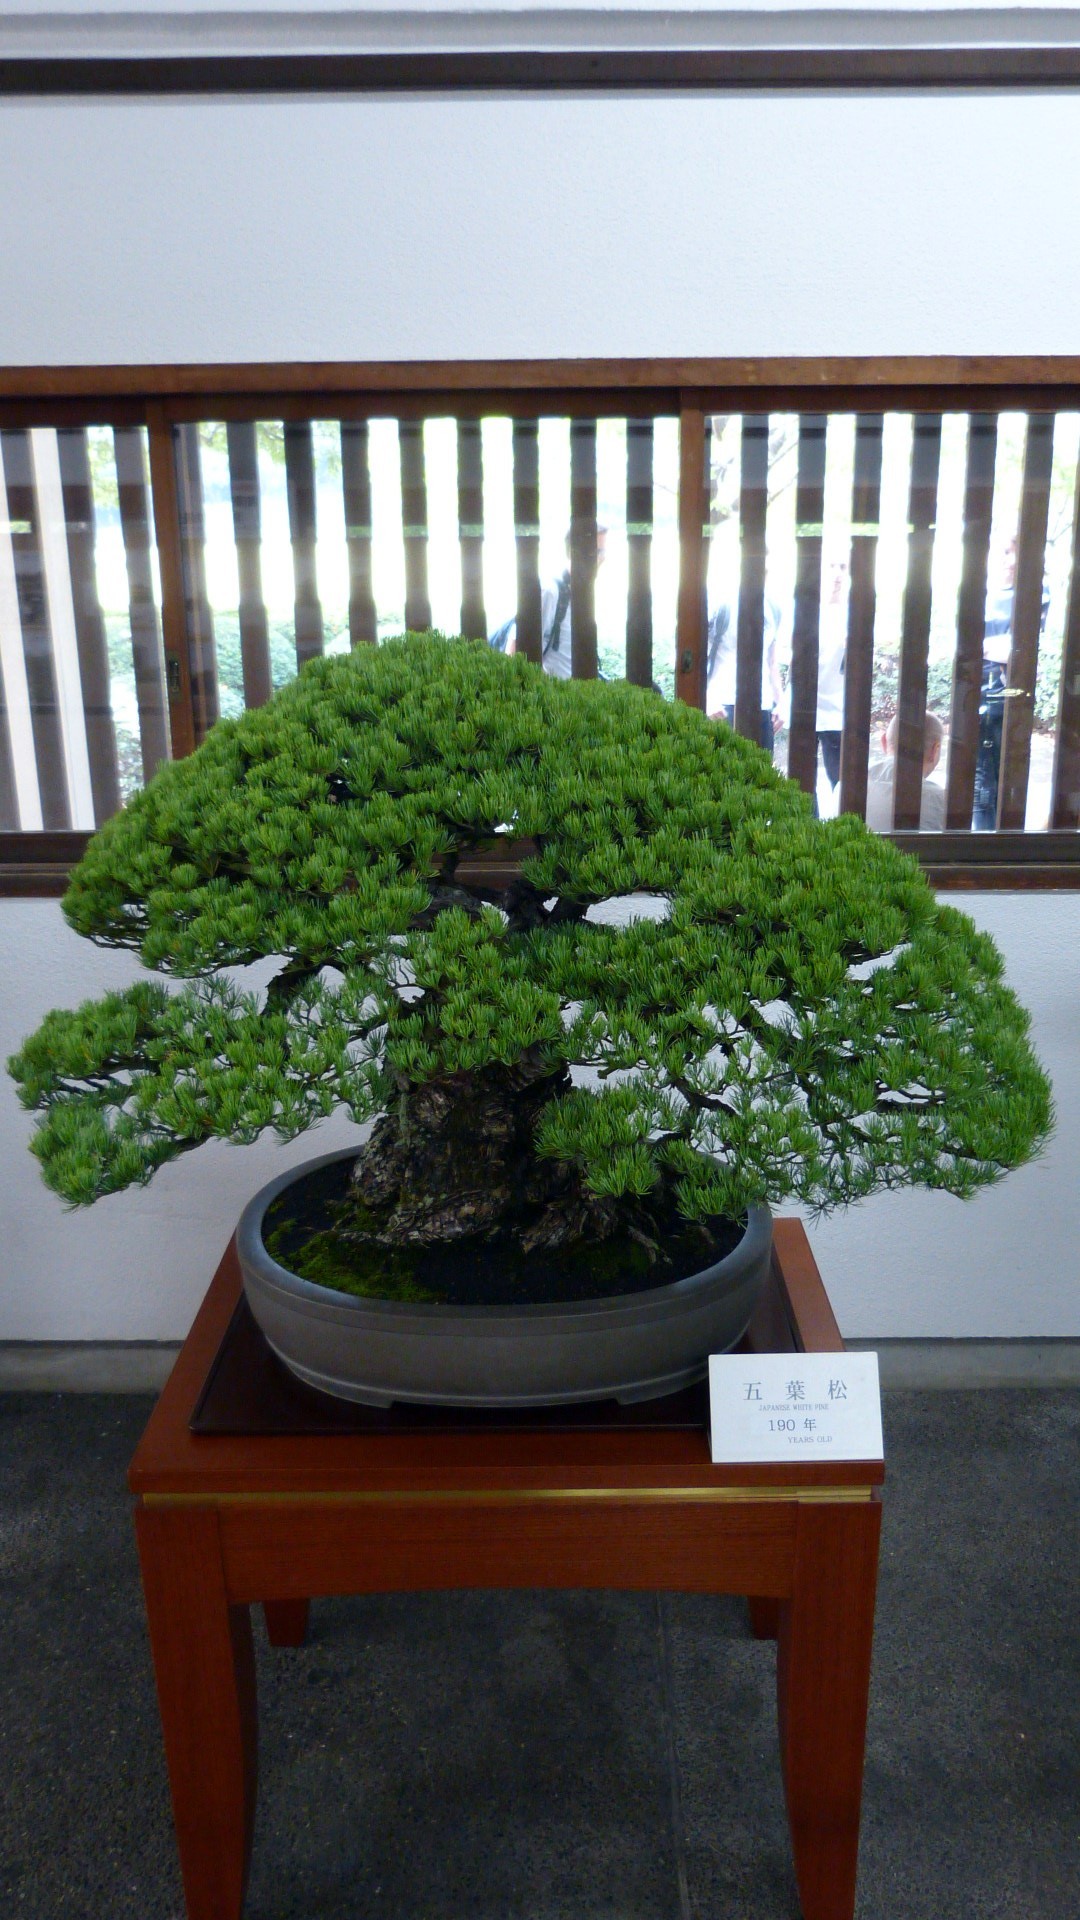 japanese white pine bonzai, 190 years old